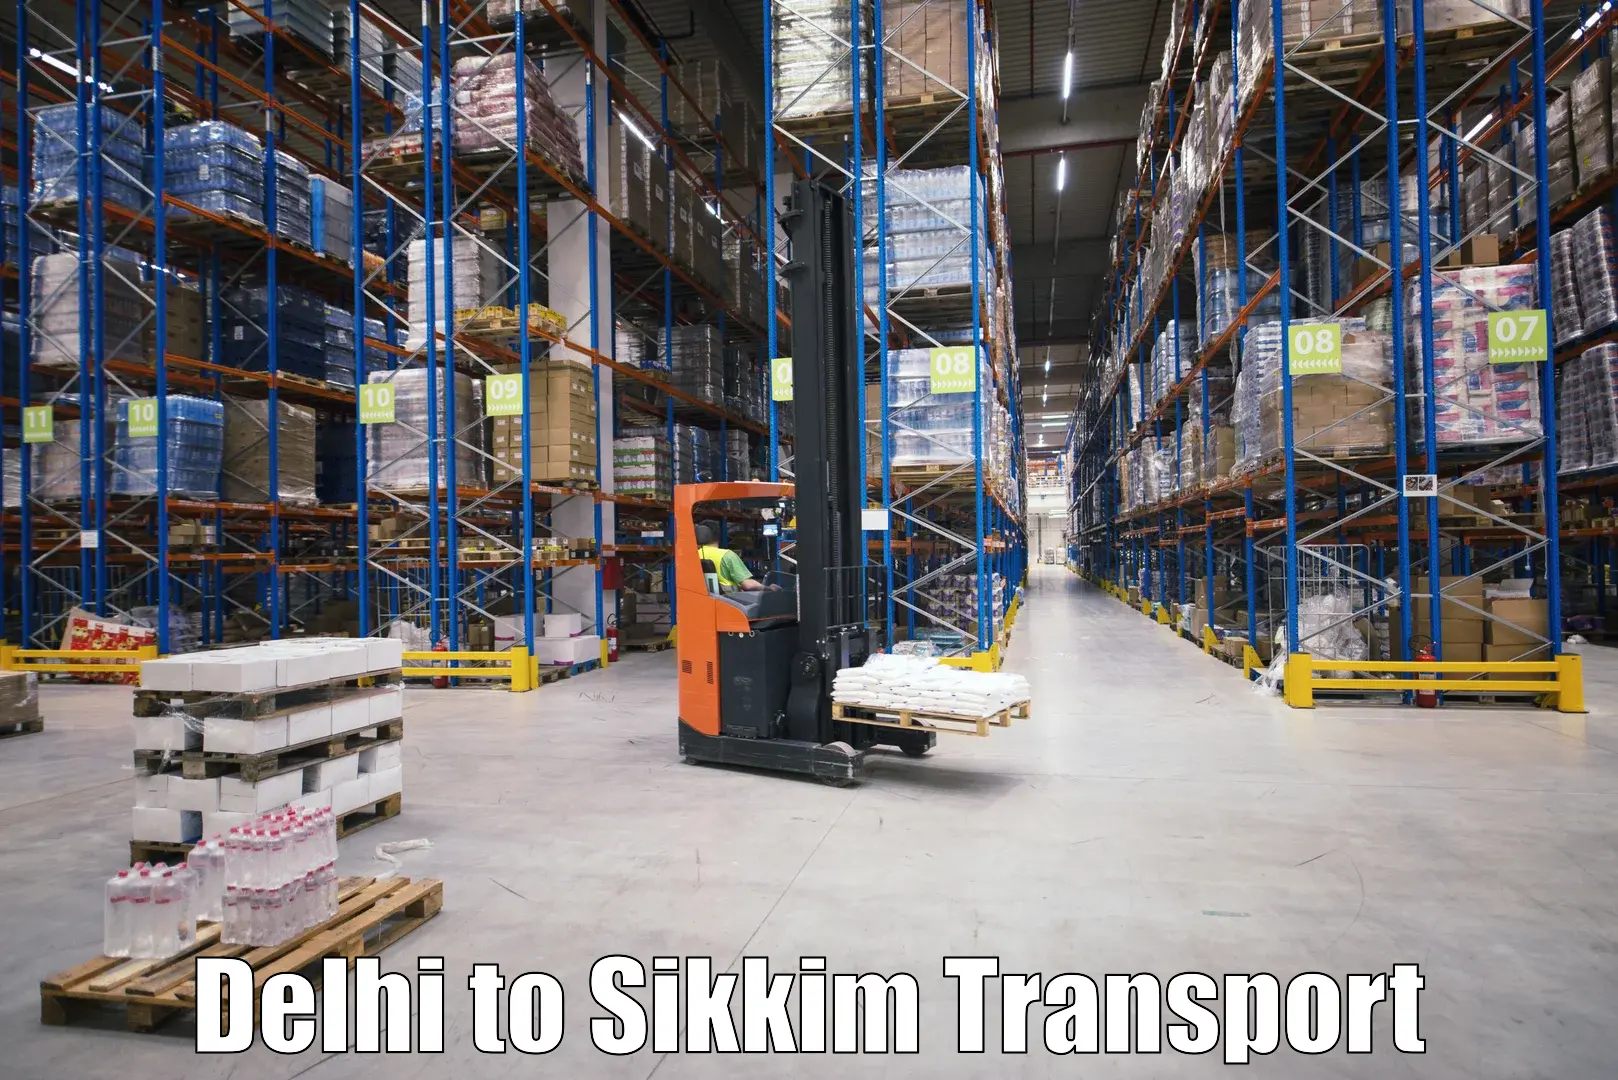 All India transport service Delhi to Rangpo